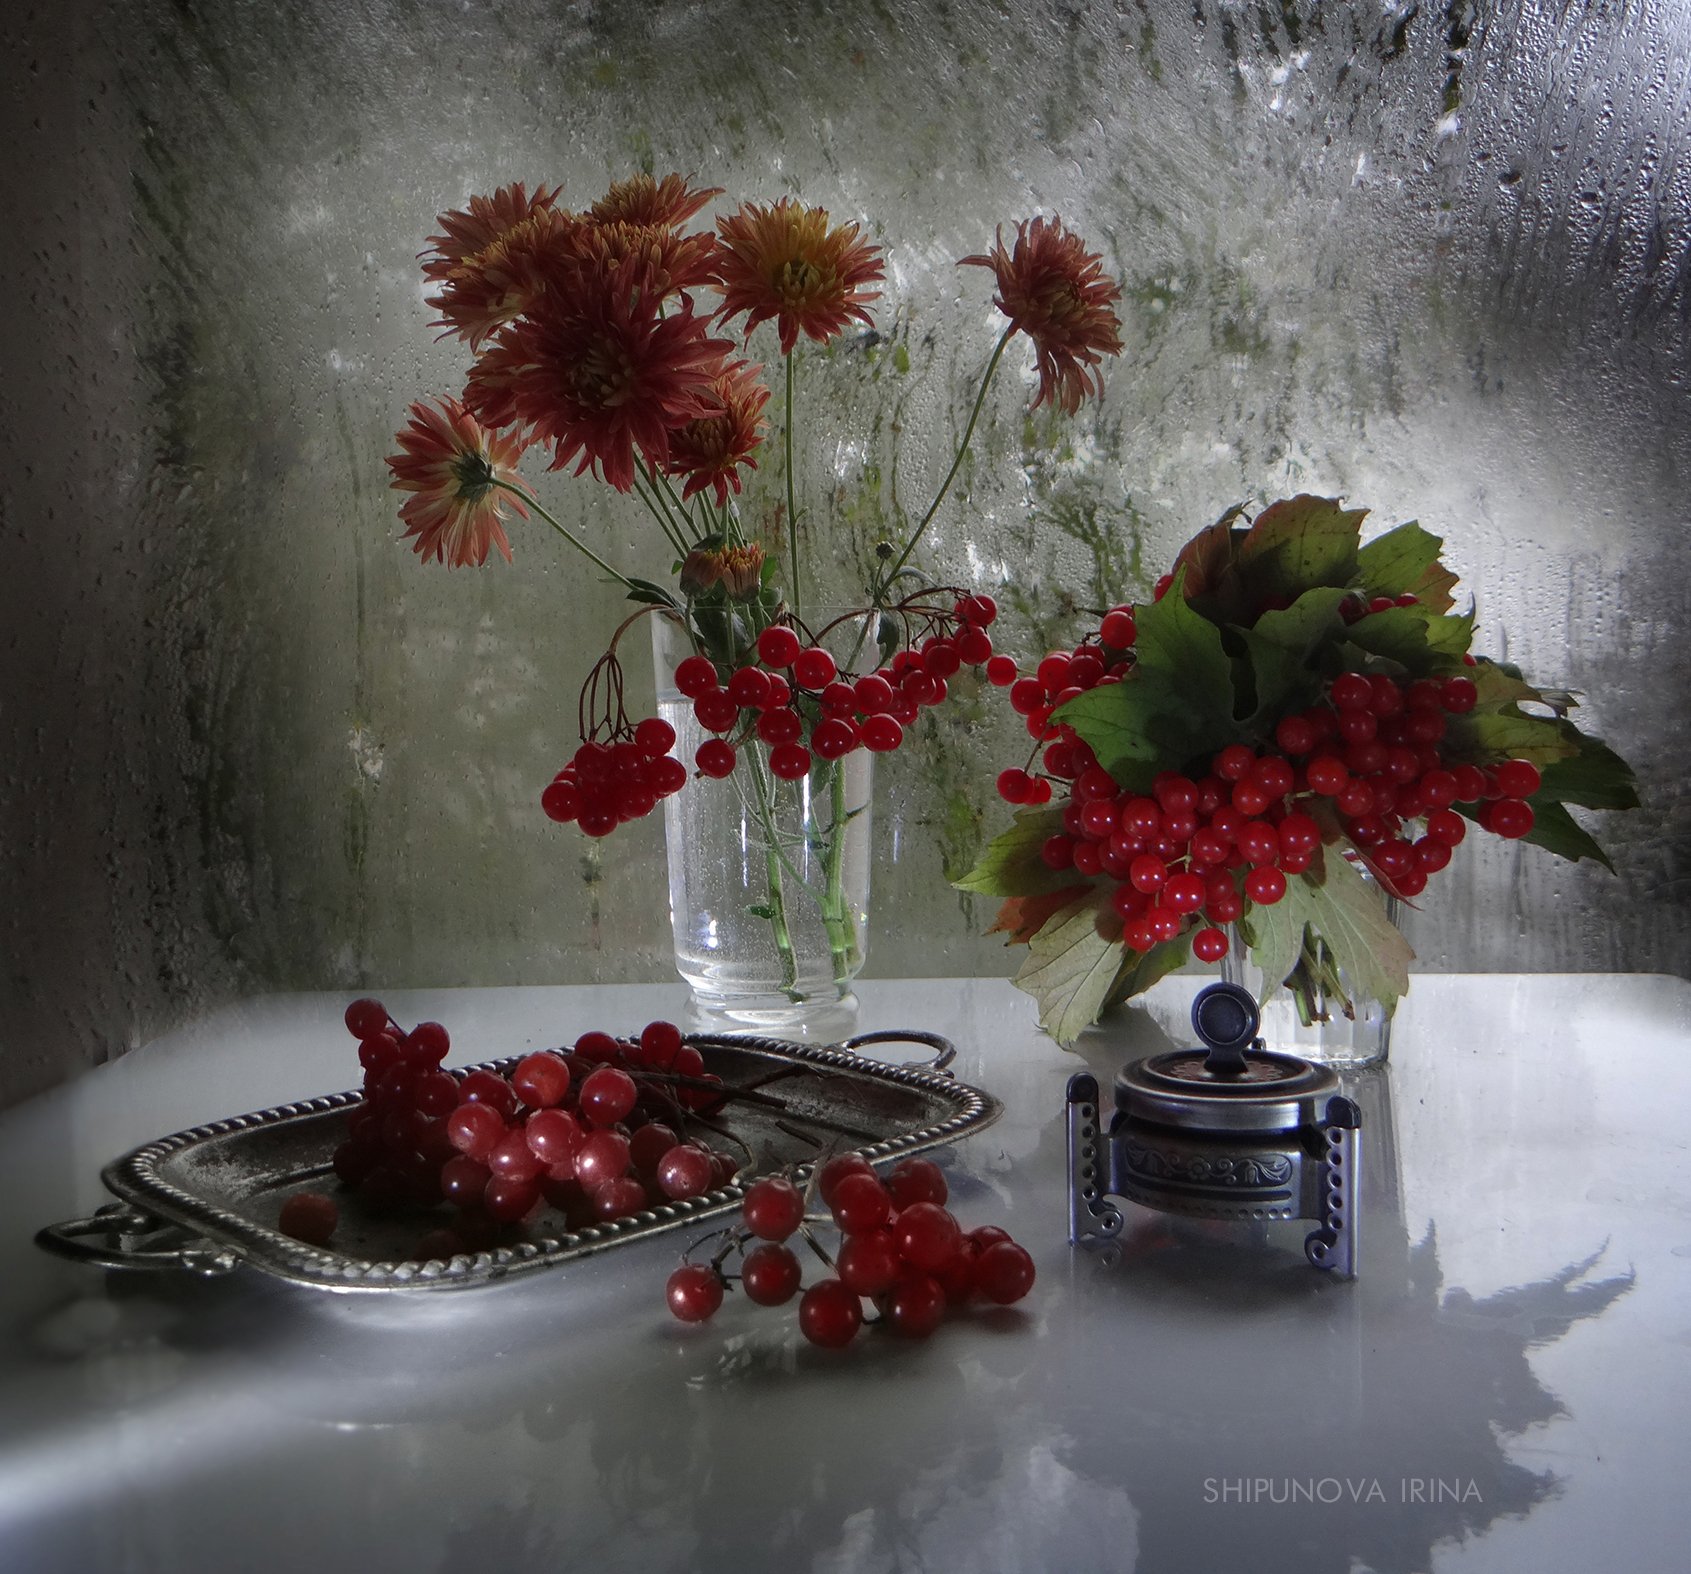 осенние, цветы, калина, поднос, окно, дождь, Шипунова Ирина